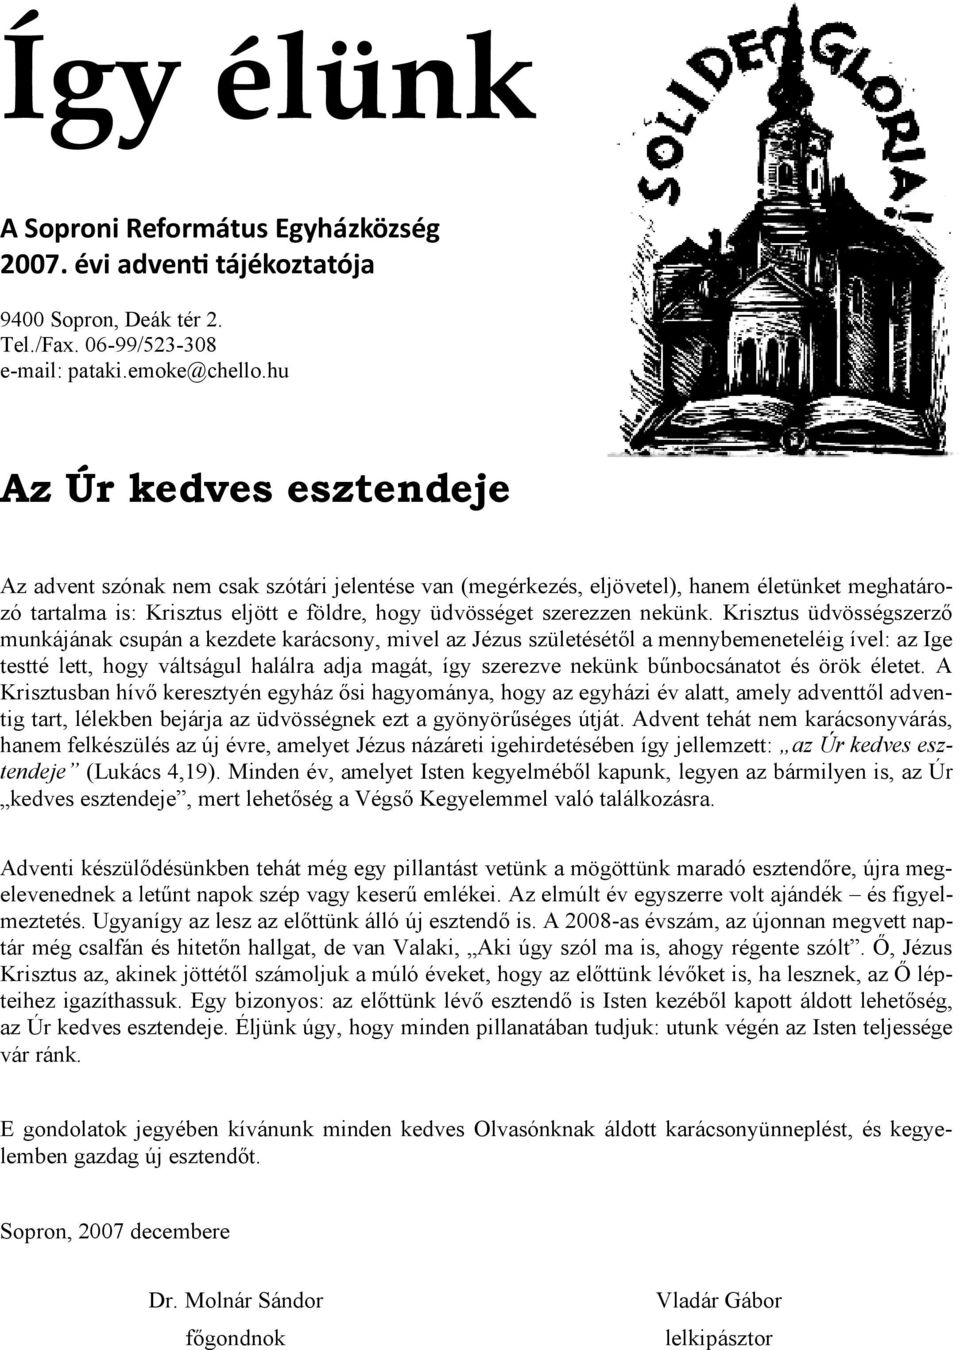 Így élünk. Az Úr kedves esztendeje. A Soproni Református Egyházközség évi  adventi tájékoztatója - PDF Ingyenes letöltés